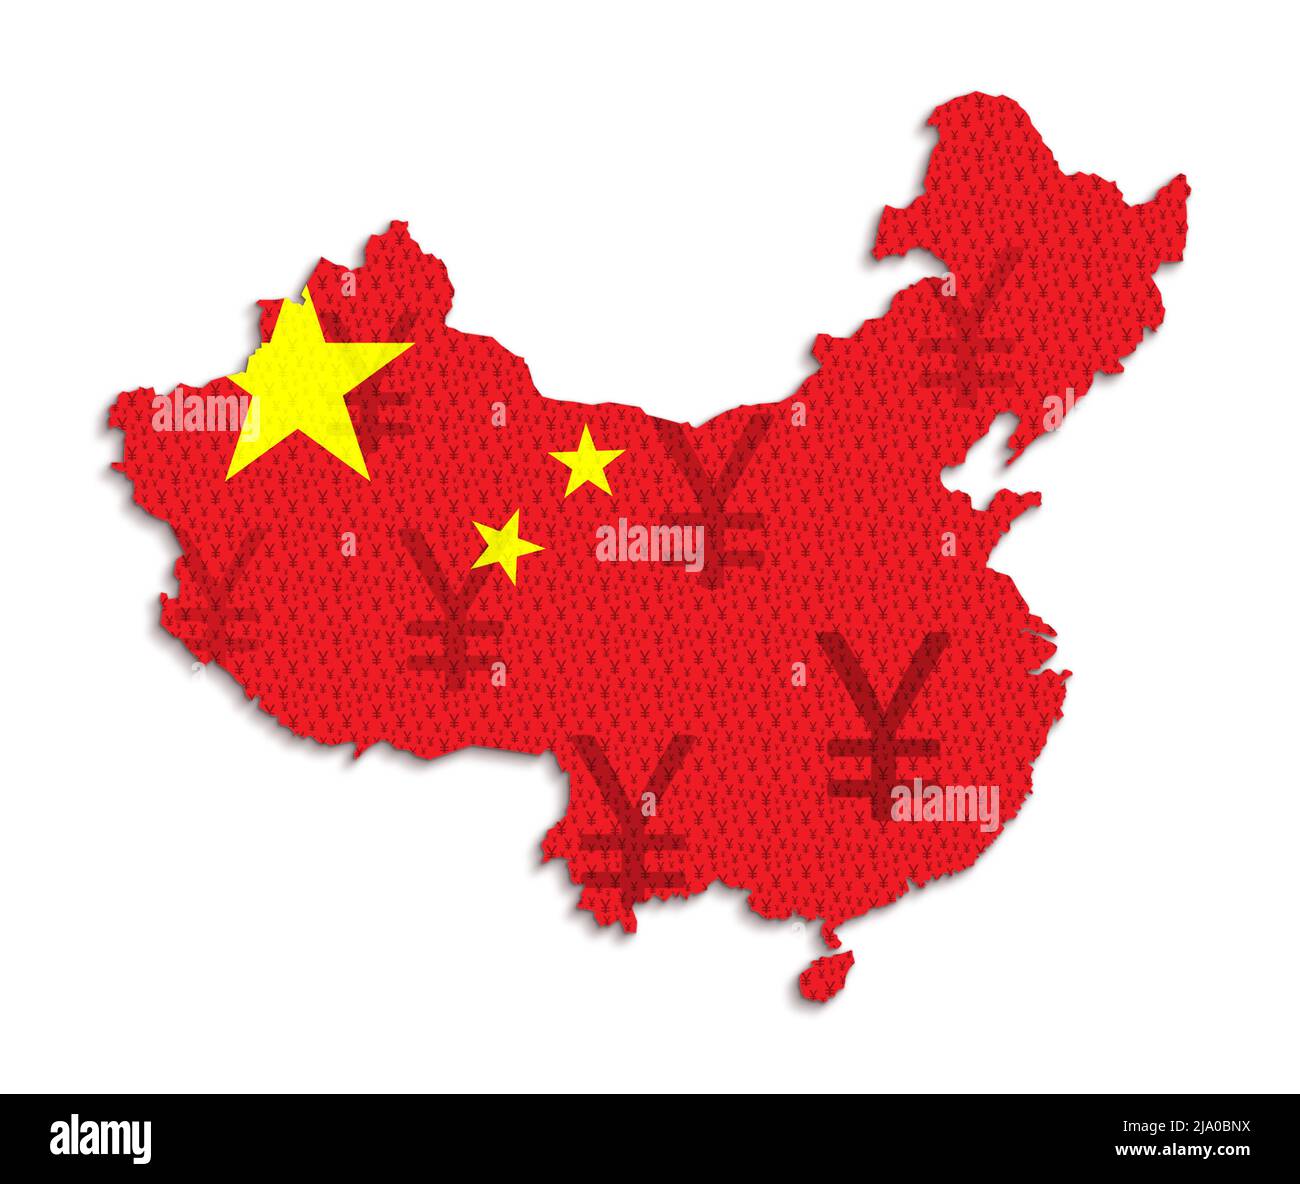 Bandiera cinese rossa e mappa della Cina fatta di simboli yuan (renminbi della valuta cinese). Illustrazione concettuale astratta su sfondo bianco. Foto Stock